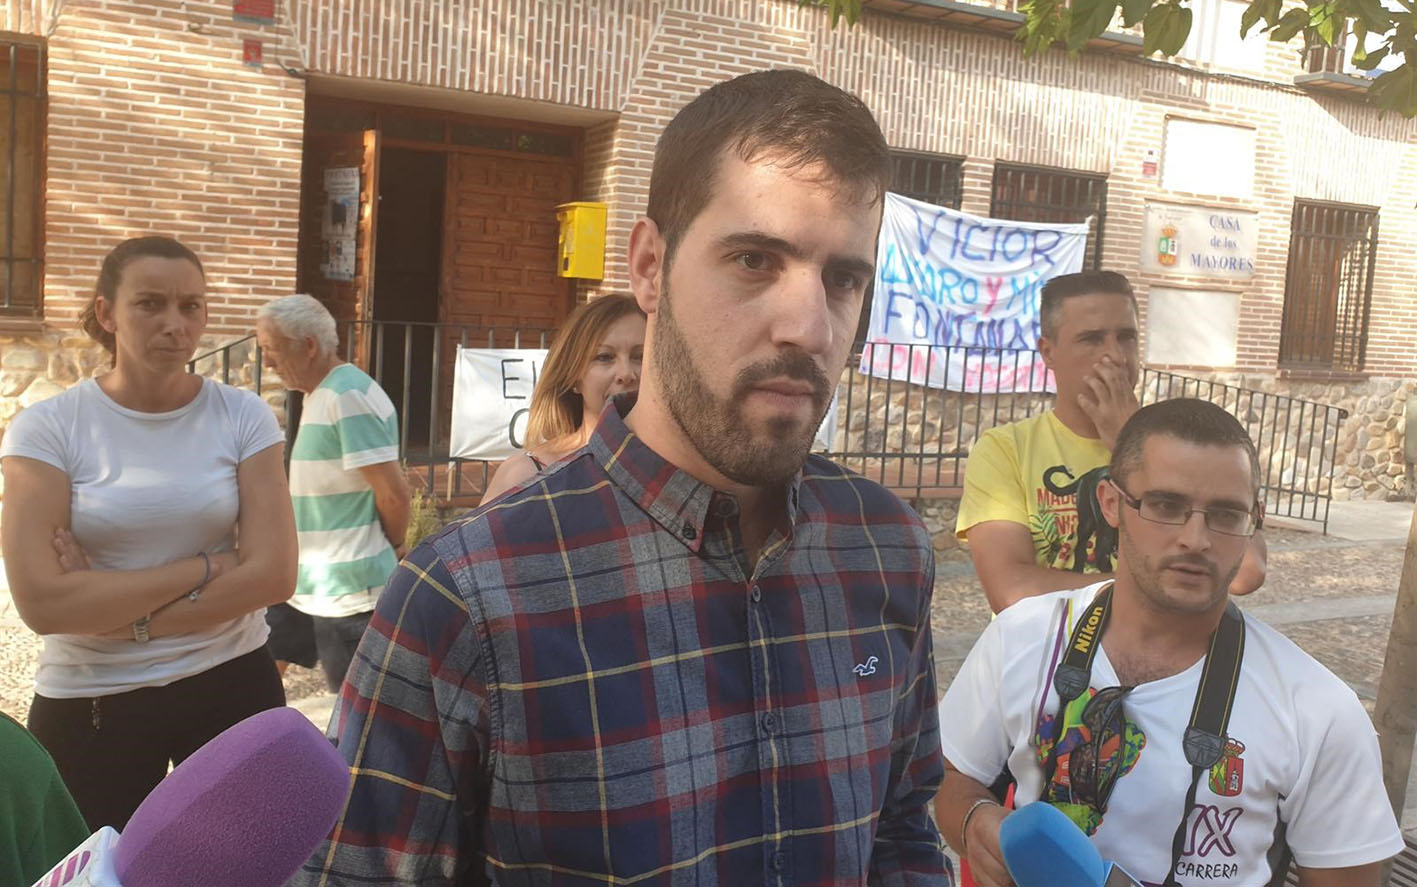 Víctor San Vidal, alcalde de Fontanar, quien fue detenido junto a otras cuatro personas y luego puesto en libertad.